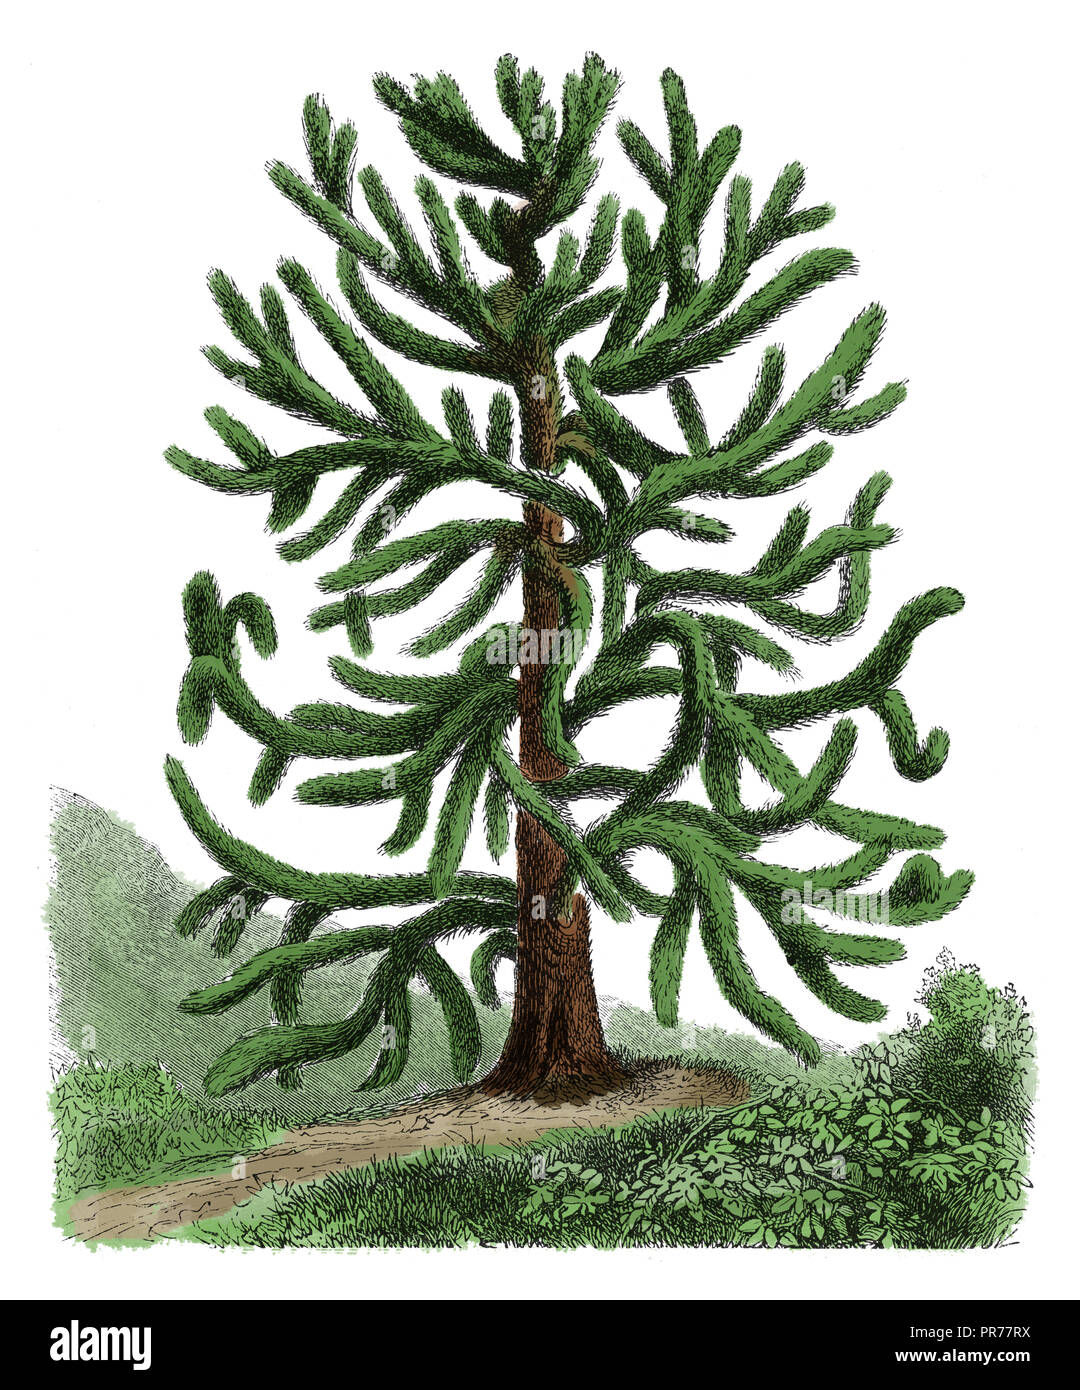 Xix secolo illustrazione di araucaria araucana, noto come monkey puzzle tree, scimmia albero di coda, cileno, pino o pehuen. Pubblicato in Systematischer B Foto Stock